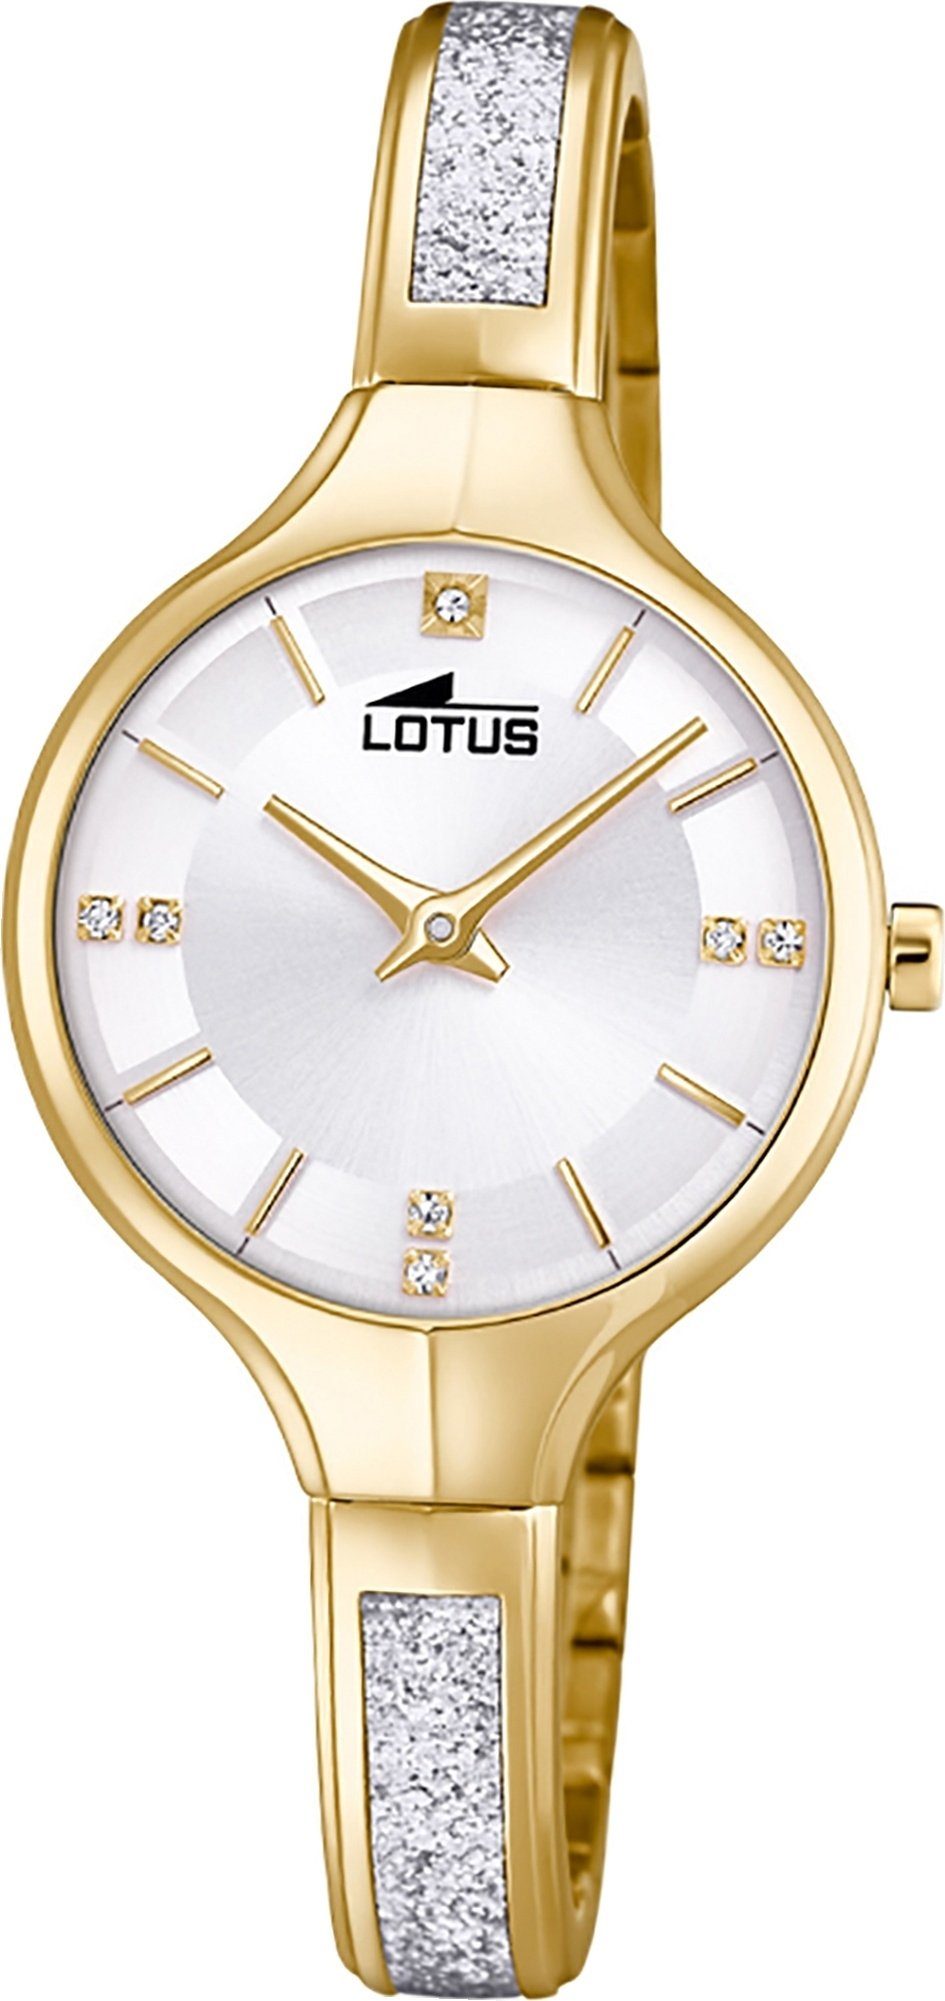 Lotus Quarzuhr LOTUS Edelstahl Damen Uhr 18595/1, Damenuhr mit Edelstahlarmband, rundes Gehäuse, klein (ca. 28mm), Fashi